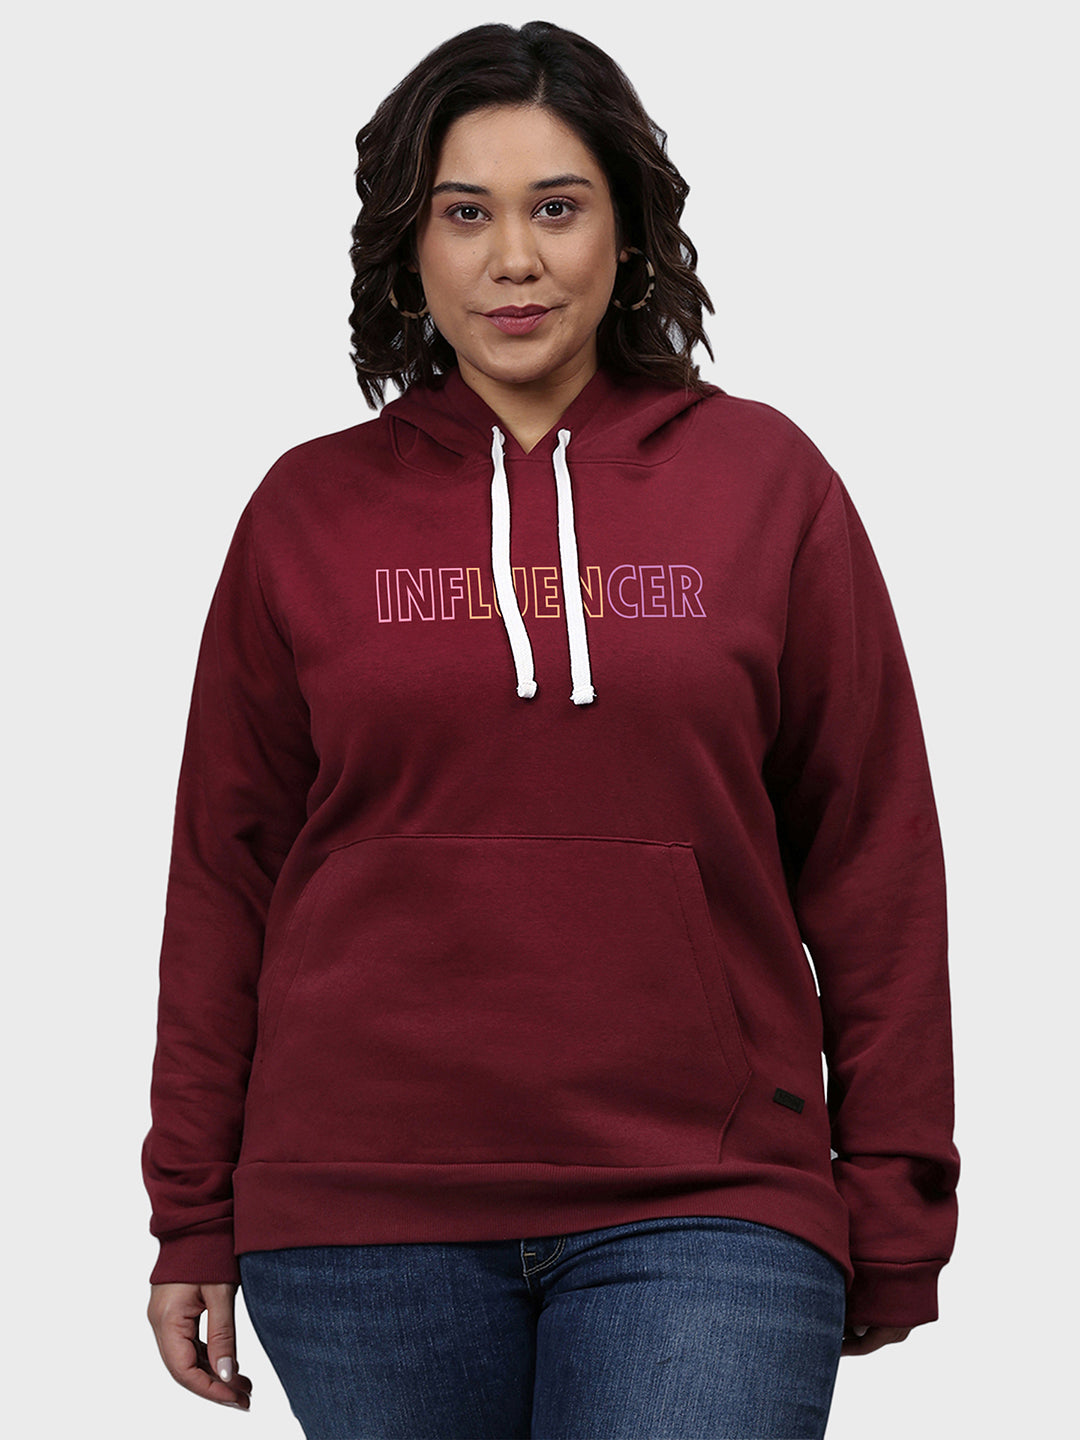 Typographic Sweatshirt With Hood